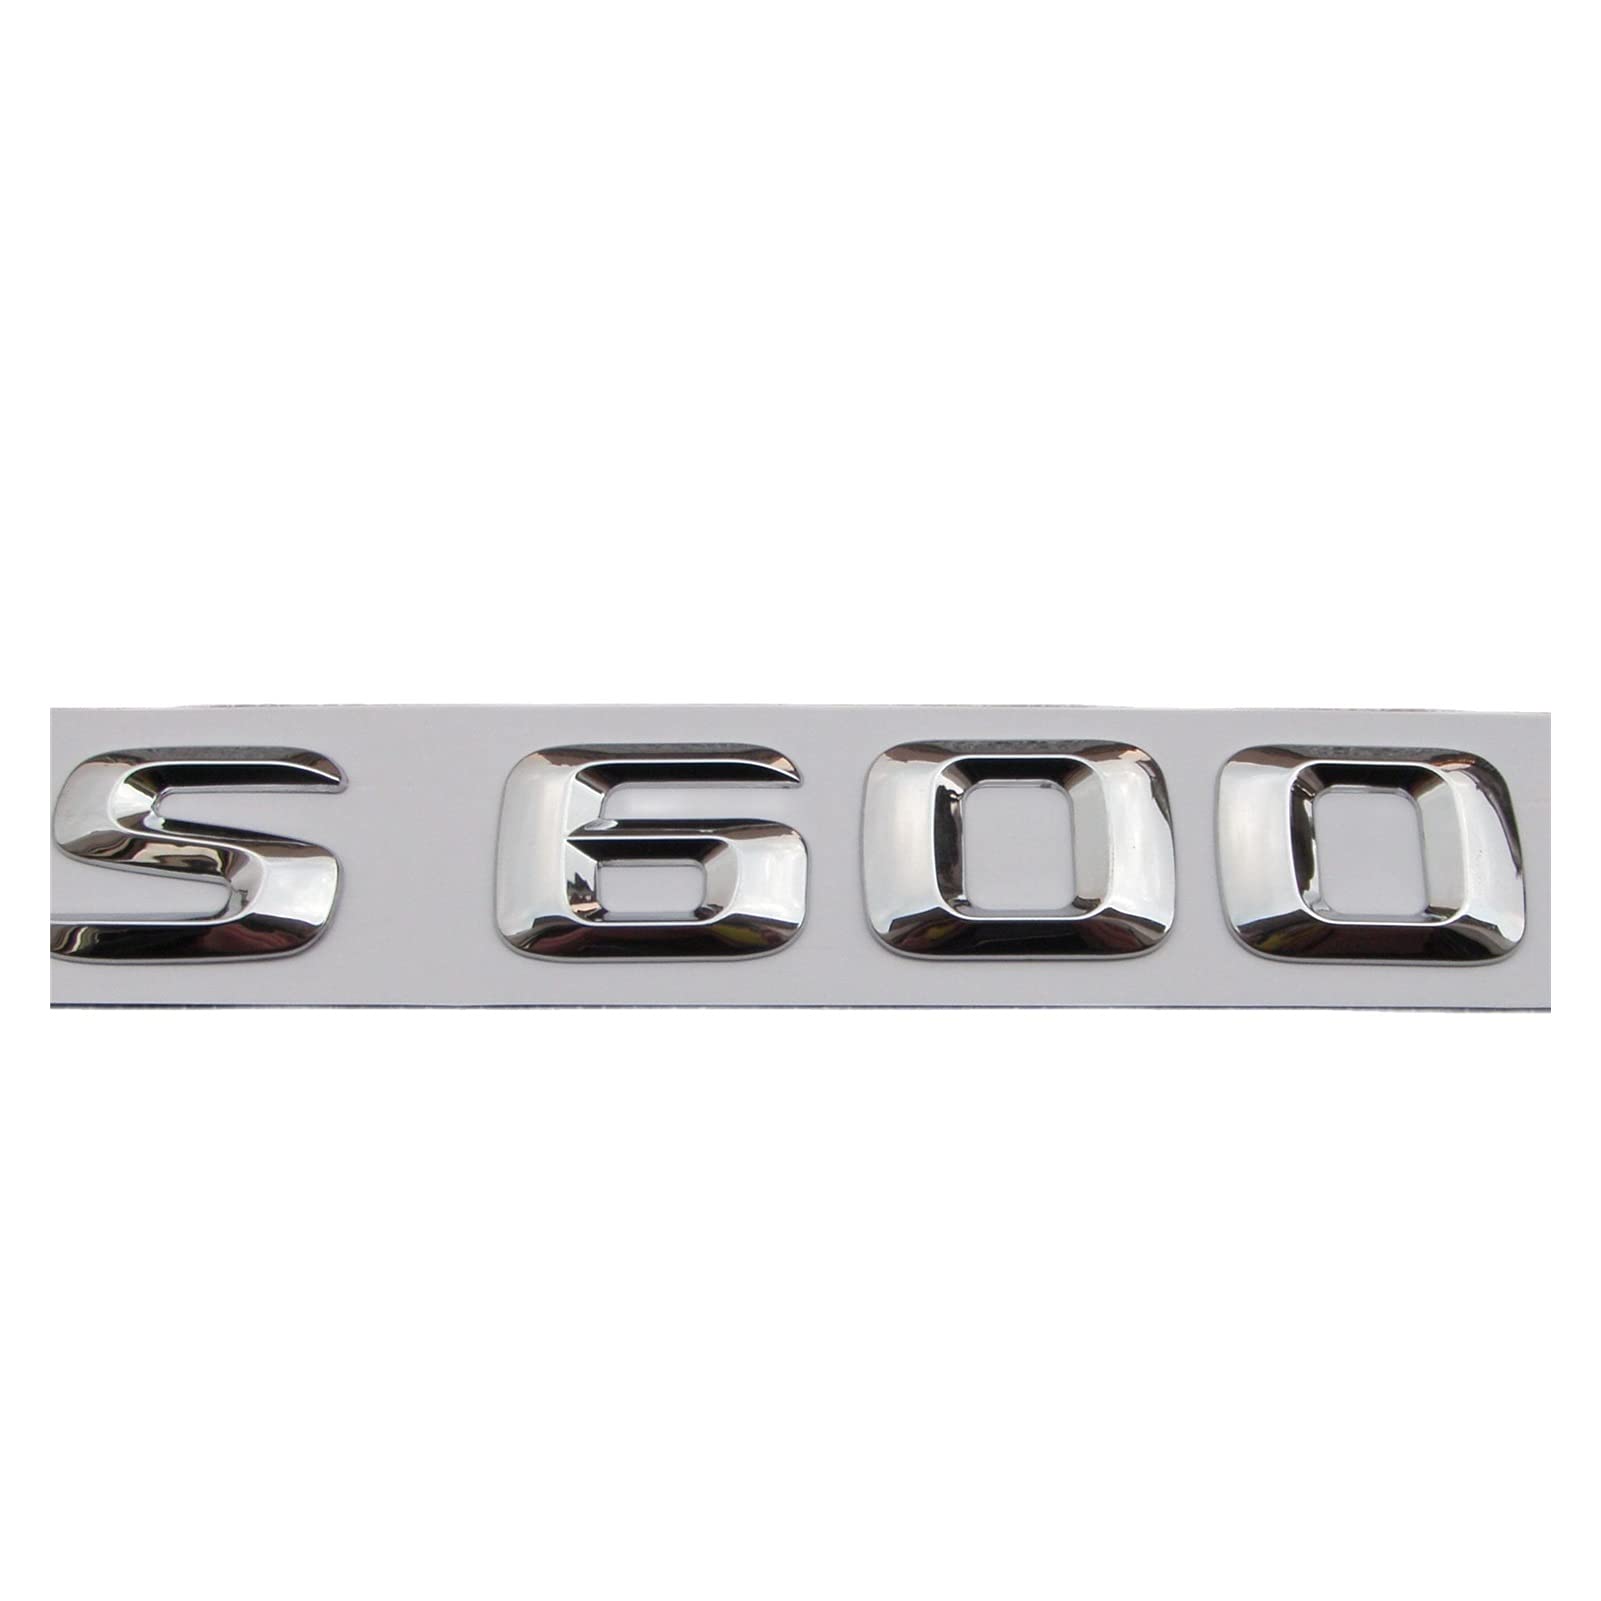 MGRAS Chrom 3D ABS Kunststoff Kofferraum Hinten Buchstaben Abzeichen Emblem Aufkleber Aufkleber Kompatibel mit Mercedes Benz S Klasse S600 Abzeichenaufkleber von MGRAS